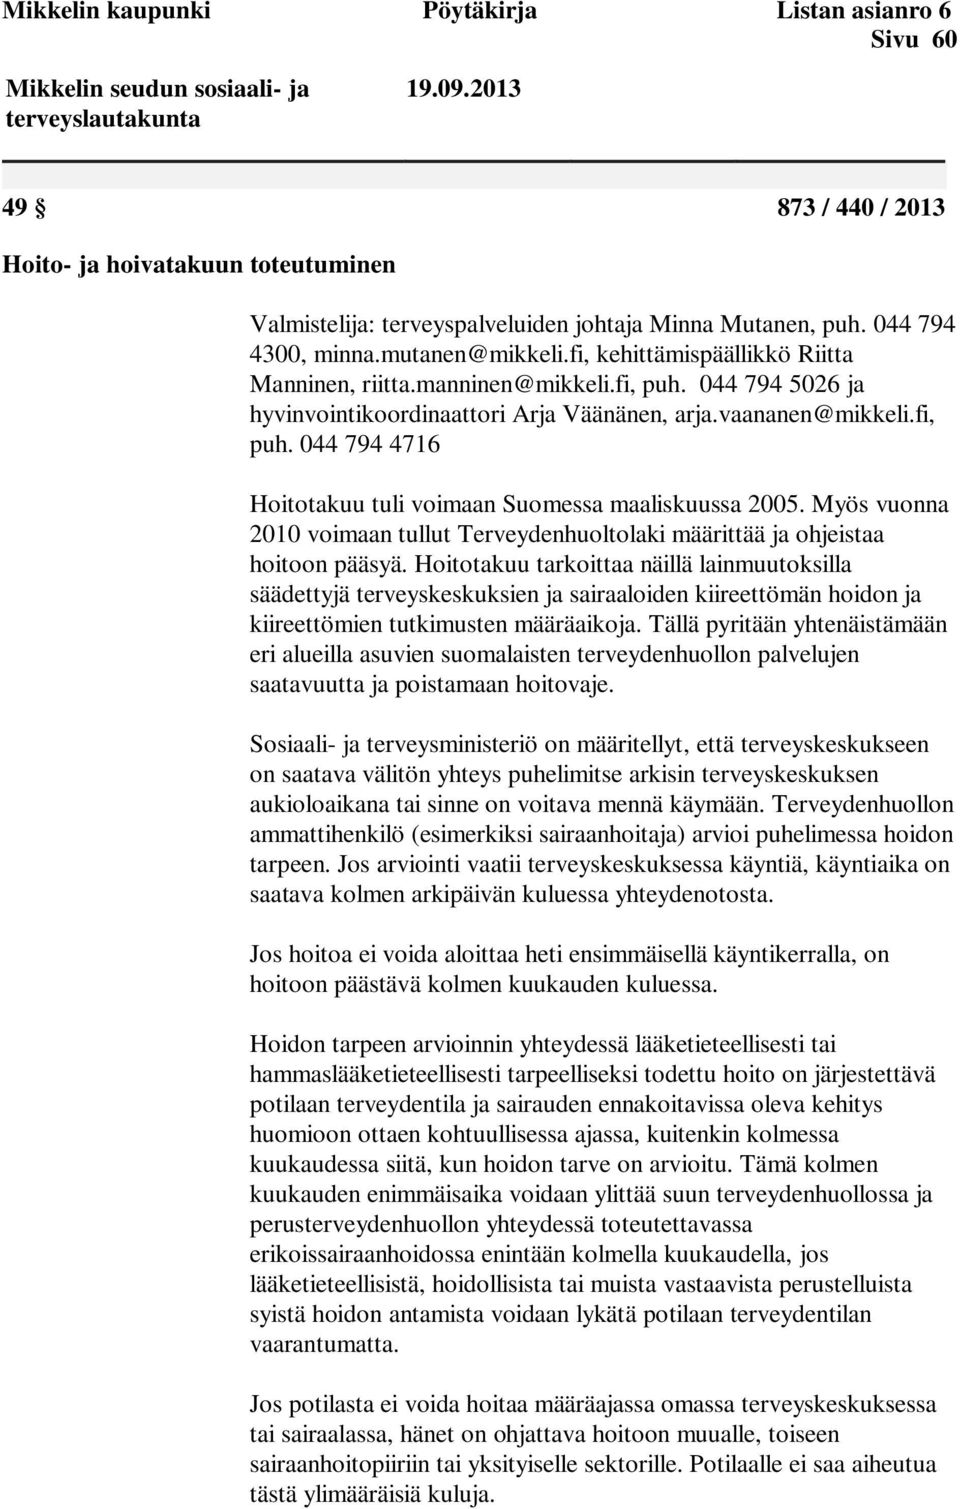 fi, kehittämispäällikkö Riitta Manninen, riitta.manninen@mikkeli.fi, puh. 044 794 5026 ja hyvinvointikoordinaattori Arja Väänänen, arja.vaananen@mikkeli.fi, puh. 044 794 4716 Hoitotakuu tuli voimaan Suomessa maaliskuussa 2005.